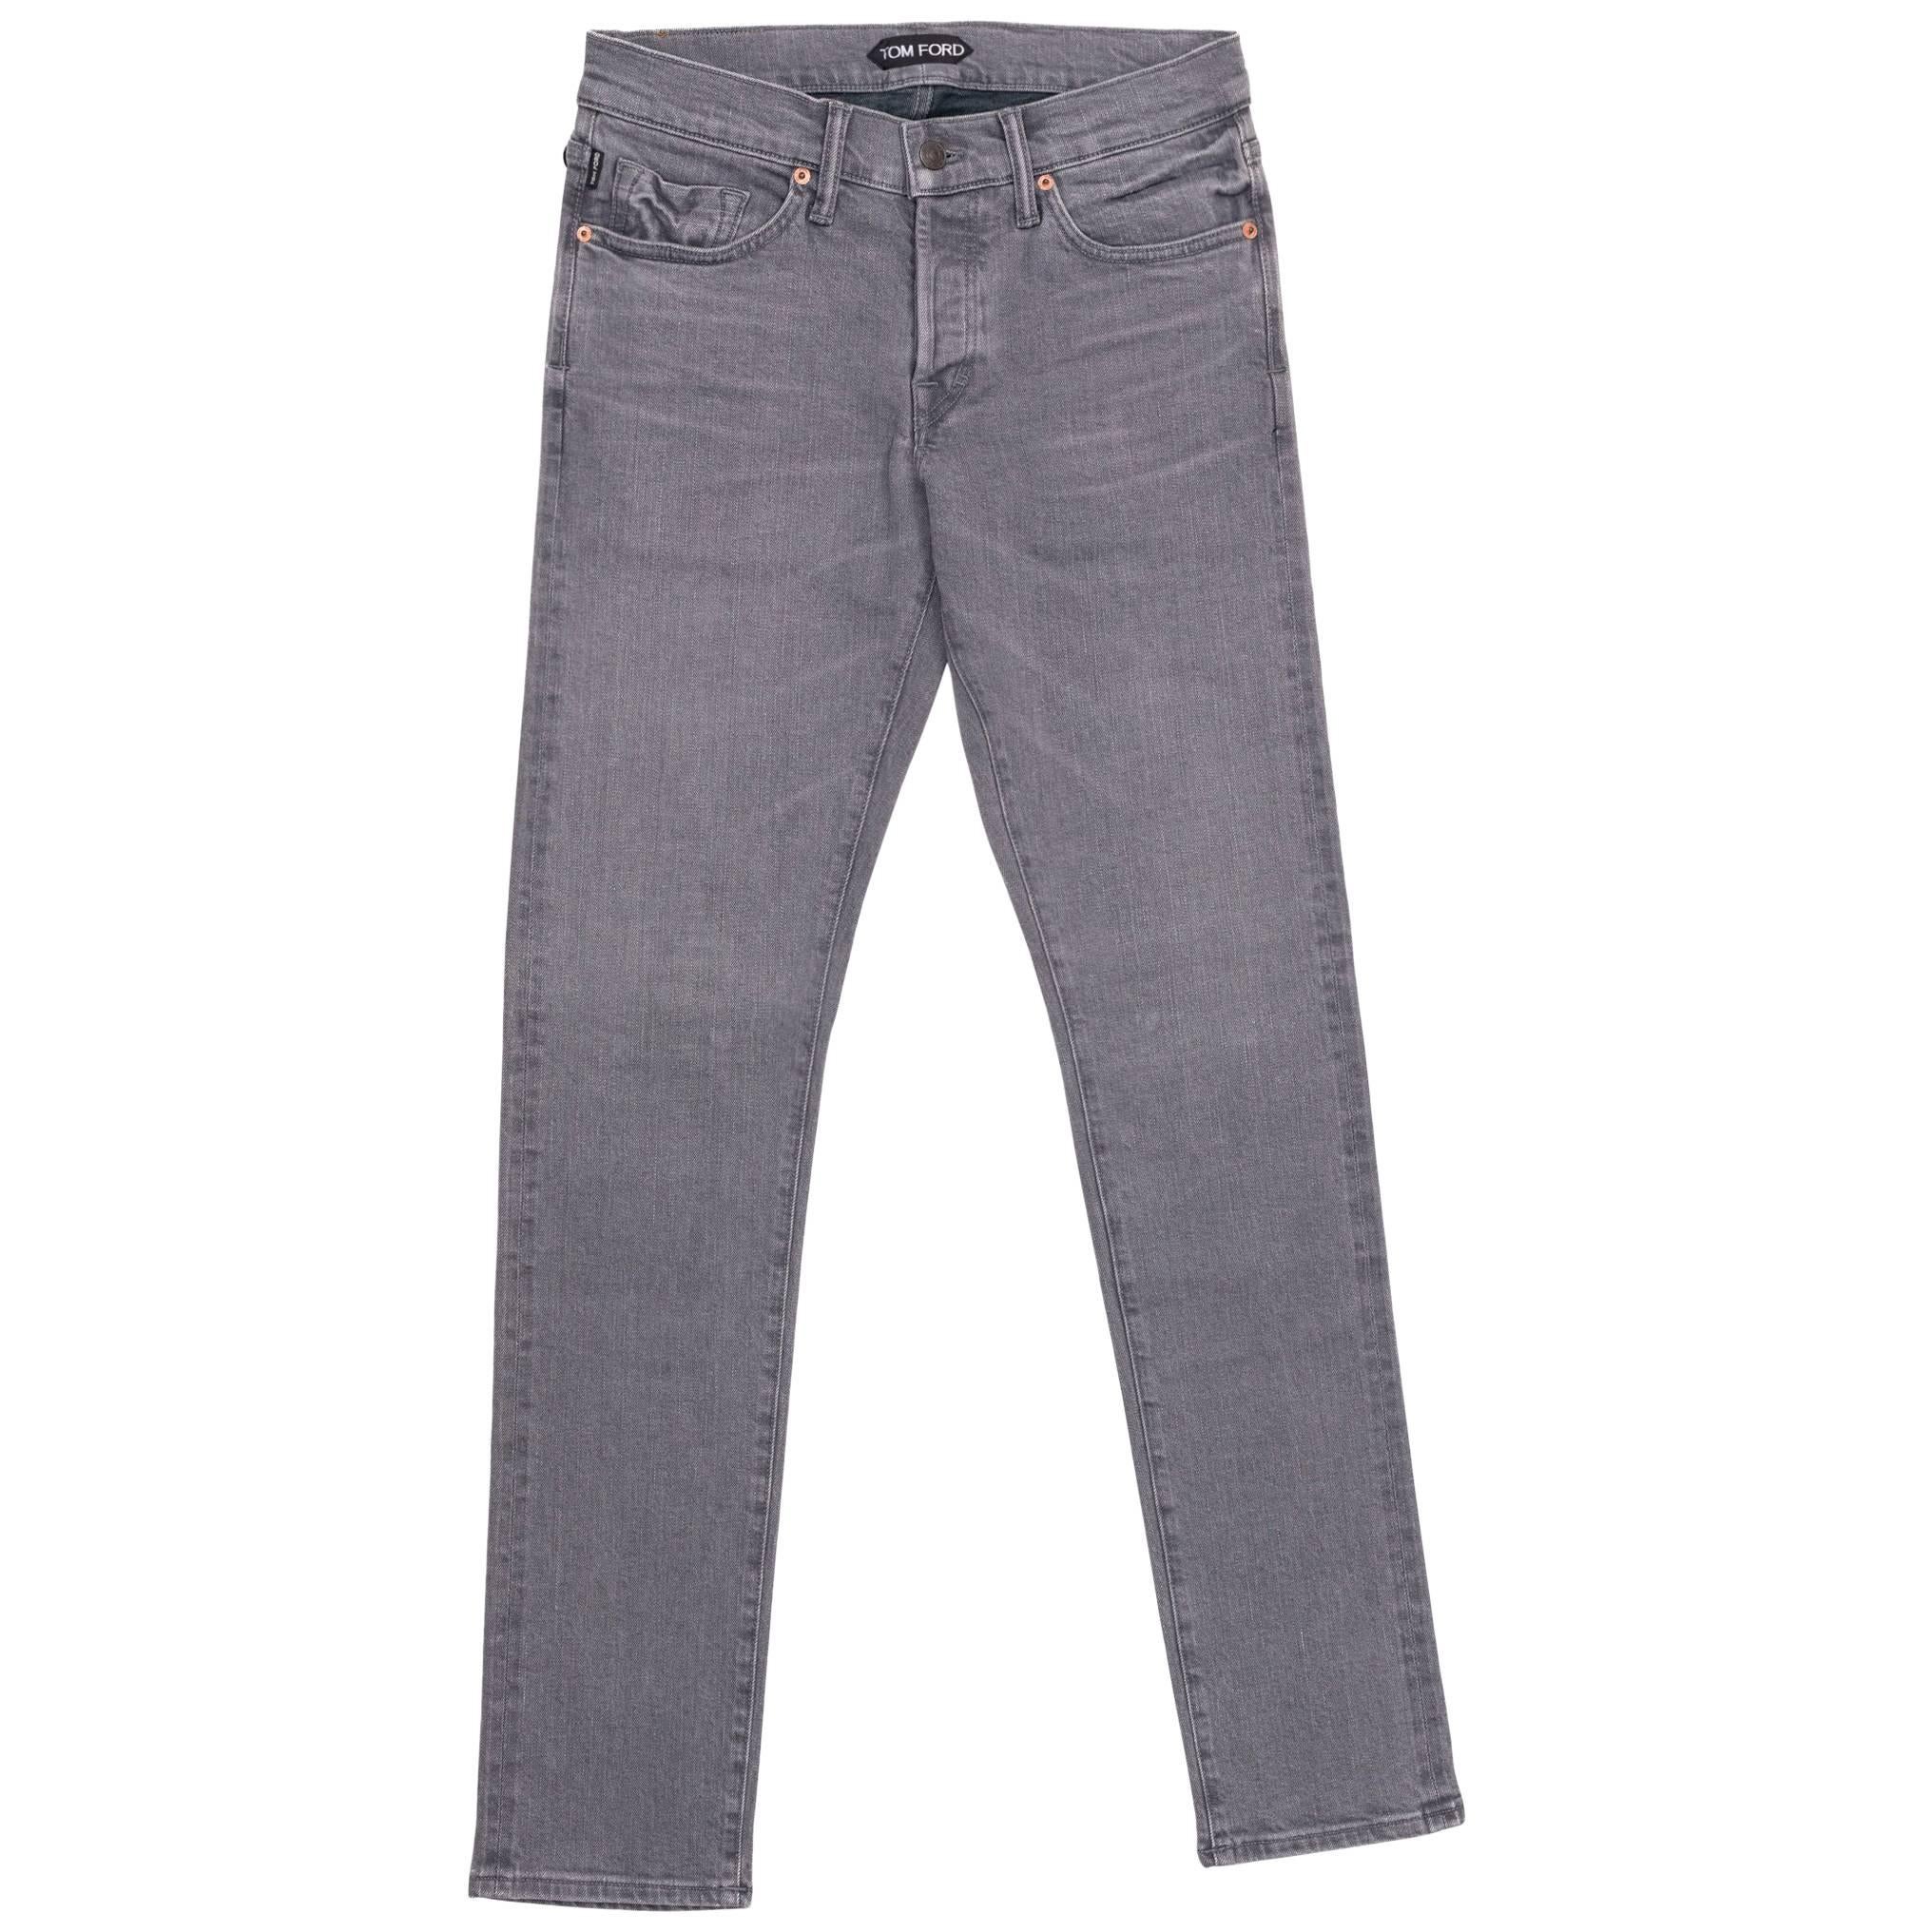 Tom Ford Selvedge Denim Jeans Medium Grey Wash Size 32 Slim Fit Model   For Sale